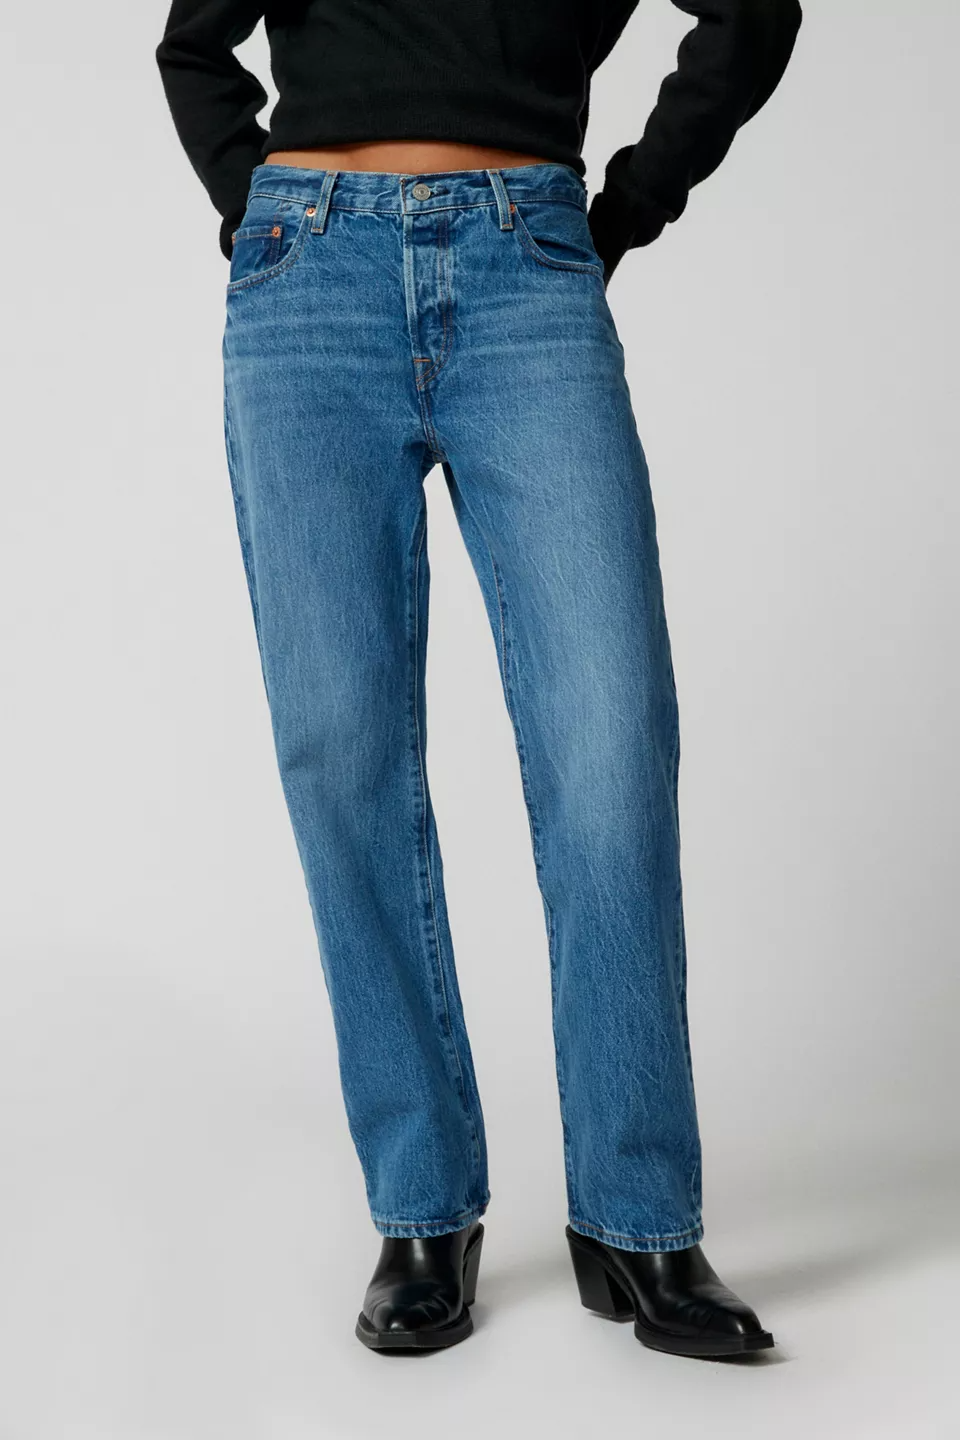 Best Boyfriend Jeans for Women 2023 - Women's '90s Jeans